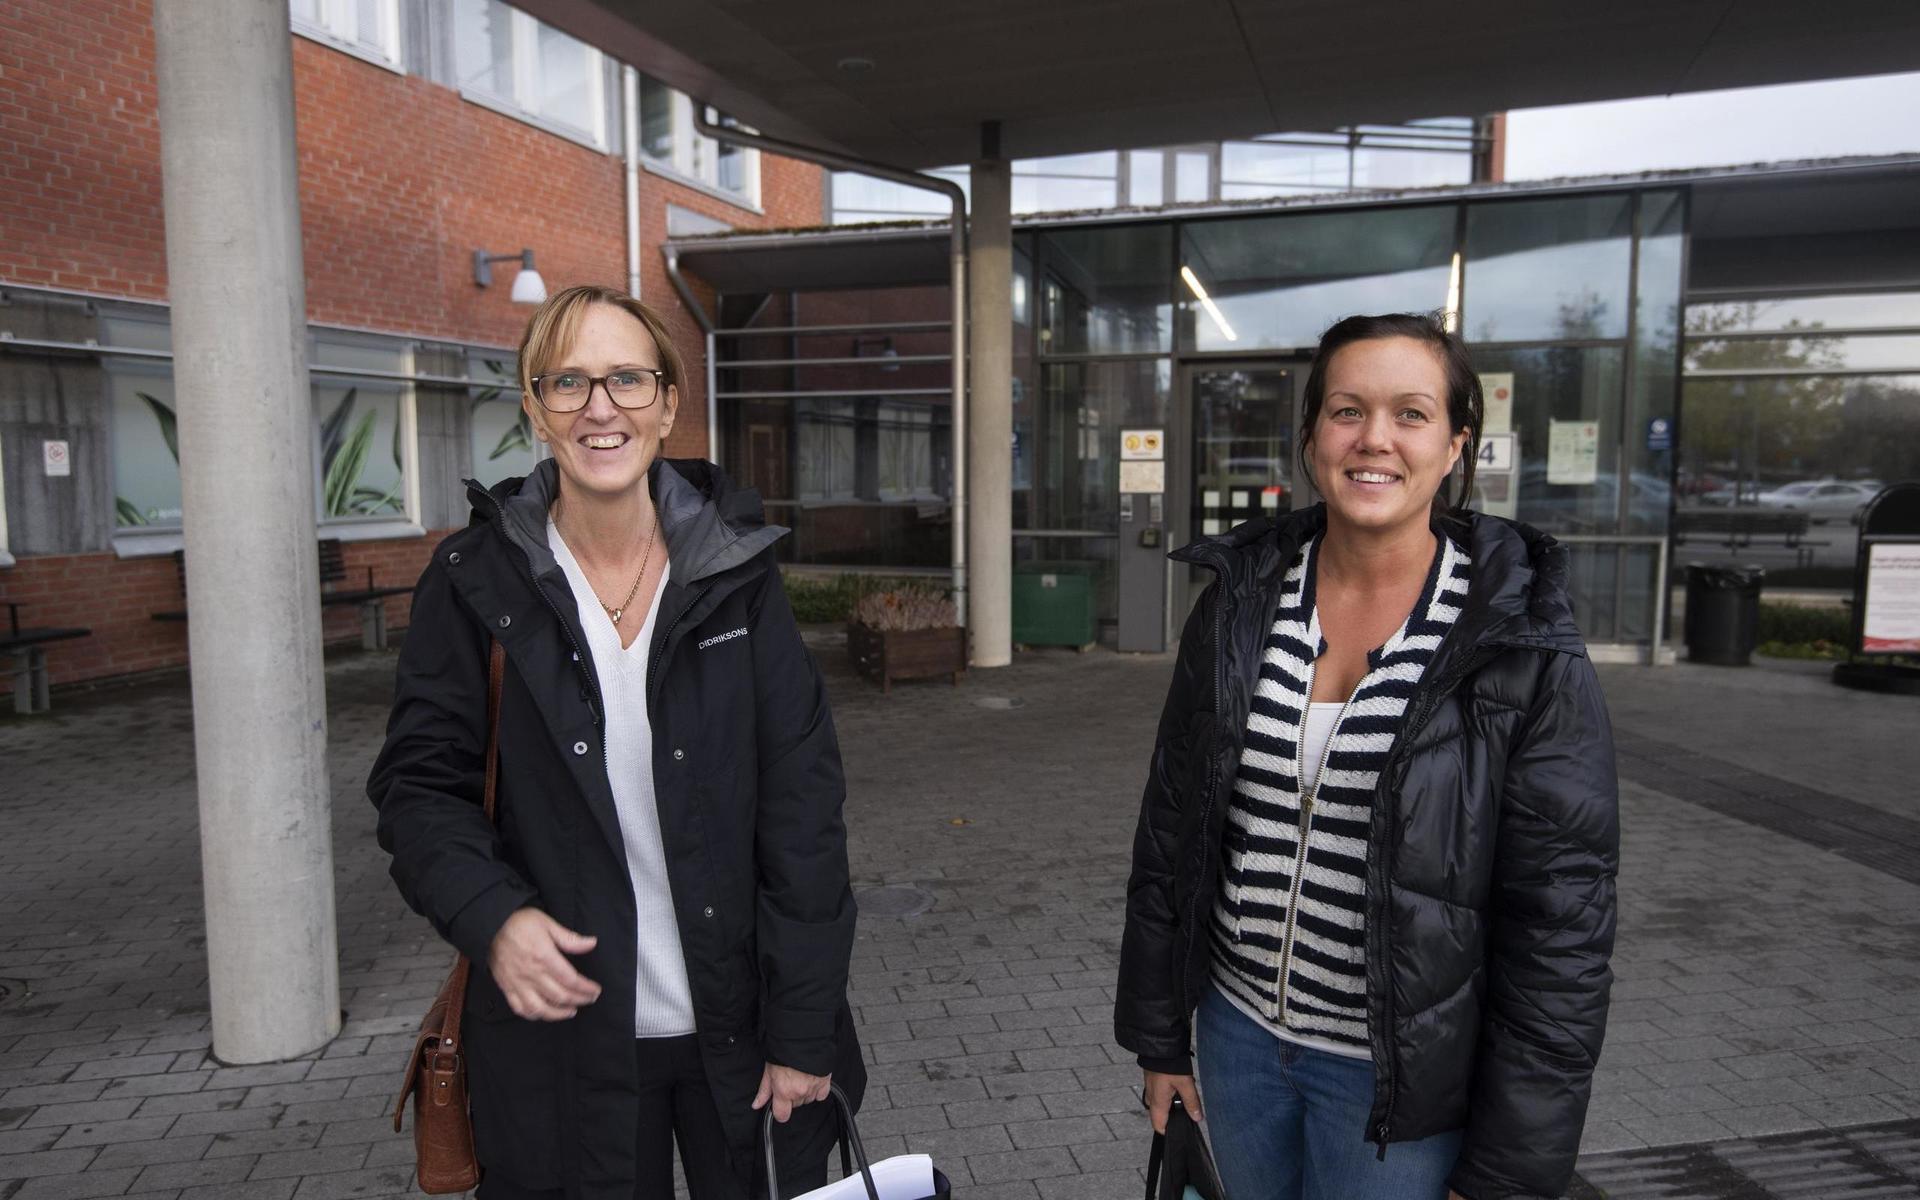 ”Året har varit tufft för all personal, oavsett om man jobbat direkt med coronapatienter eller inte”, säger Marie Johansson och Moa Hagström, båda sjuksköterskor på gynekologimottagningen.